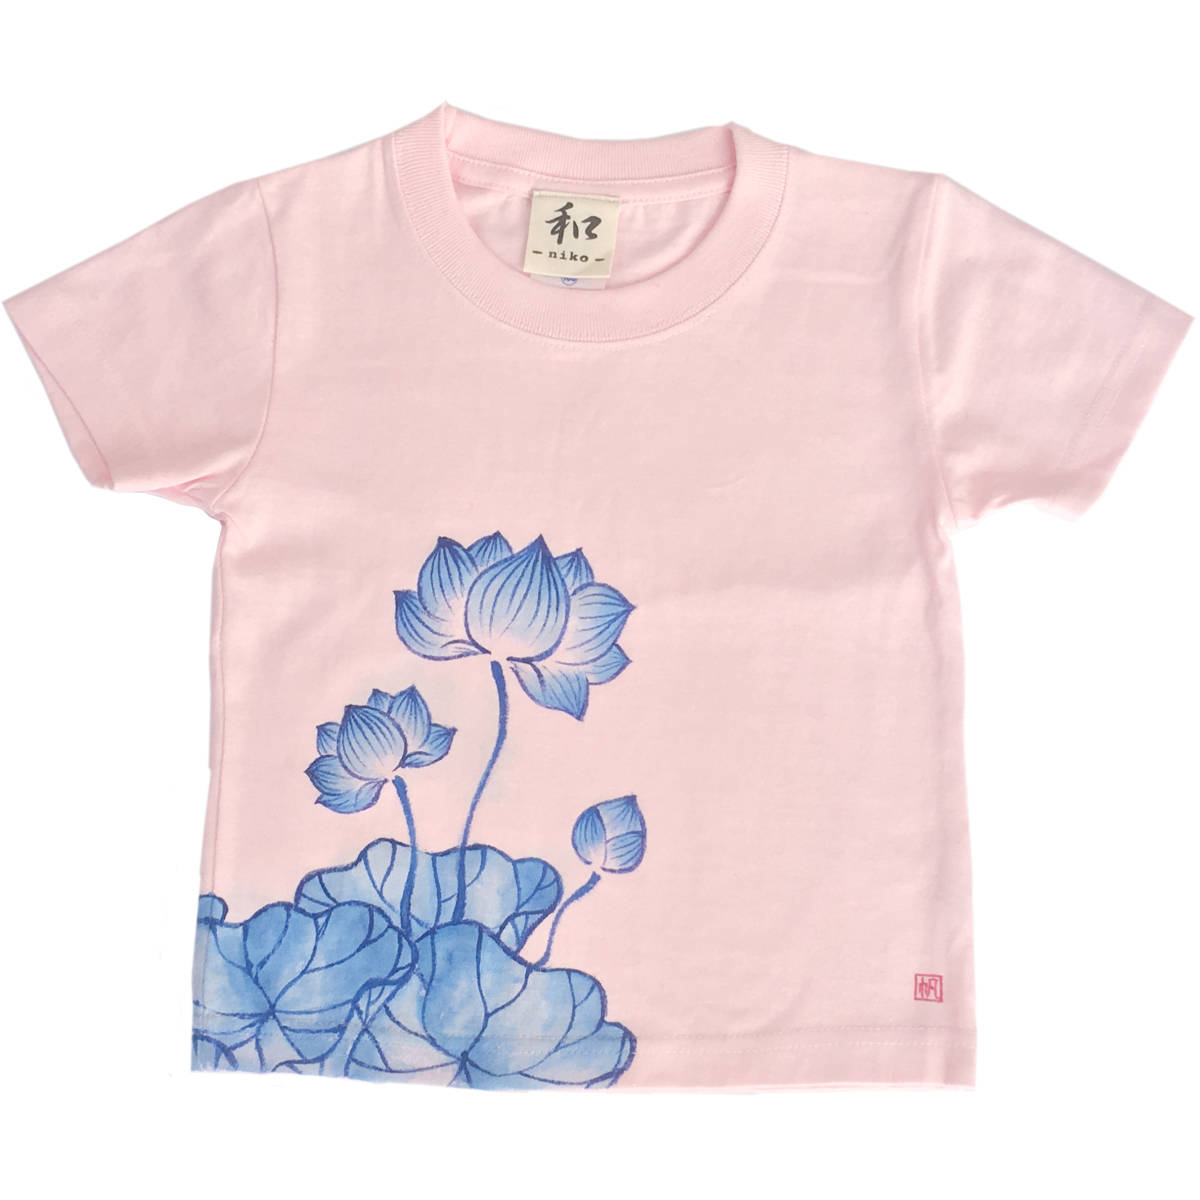 キッズ Tシャツ 130サイズ ピンク 蓮柄Tシャツ 手描きで描いた蓮の花柄Tシャツ 半袖 和柄 和風 レトロ ハンドメイド, トップス, 半袖Tシャツ, 130(125~134cm)